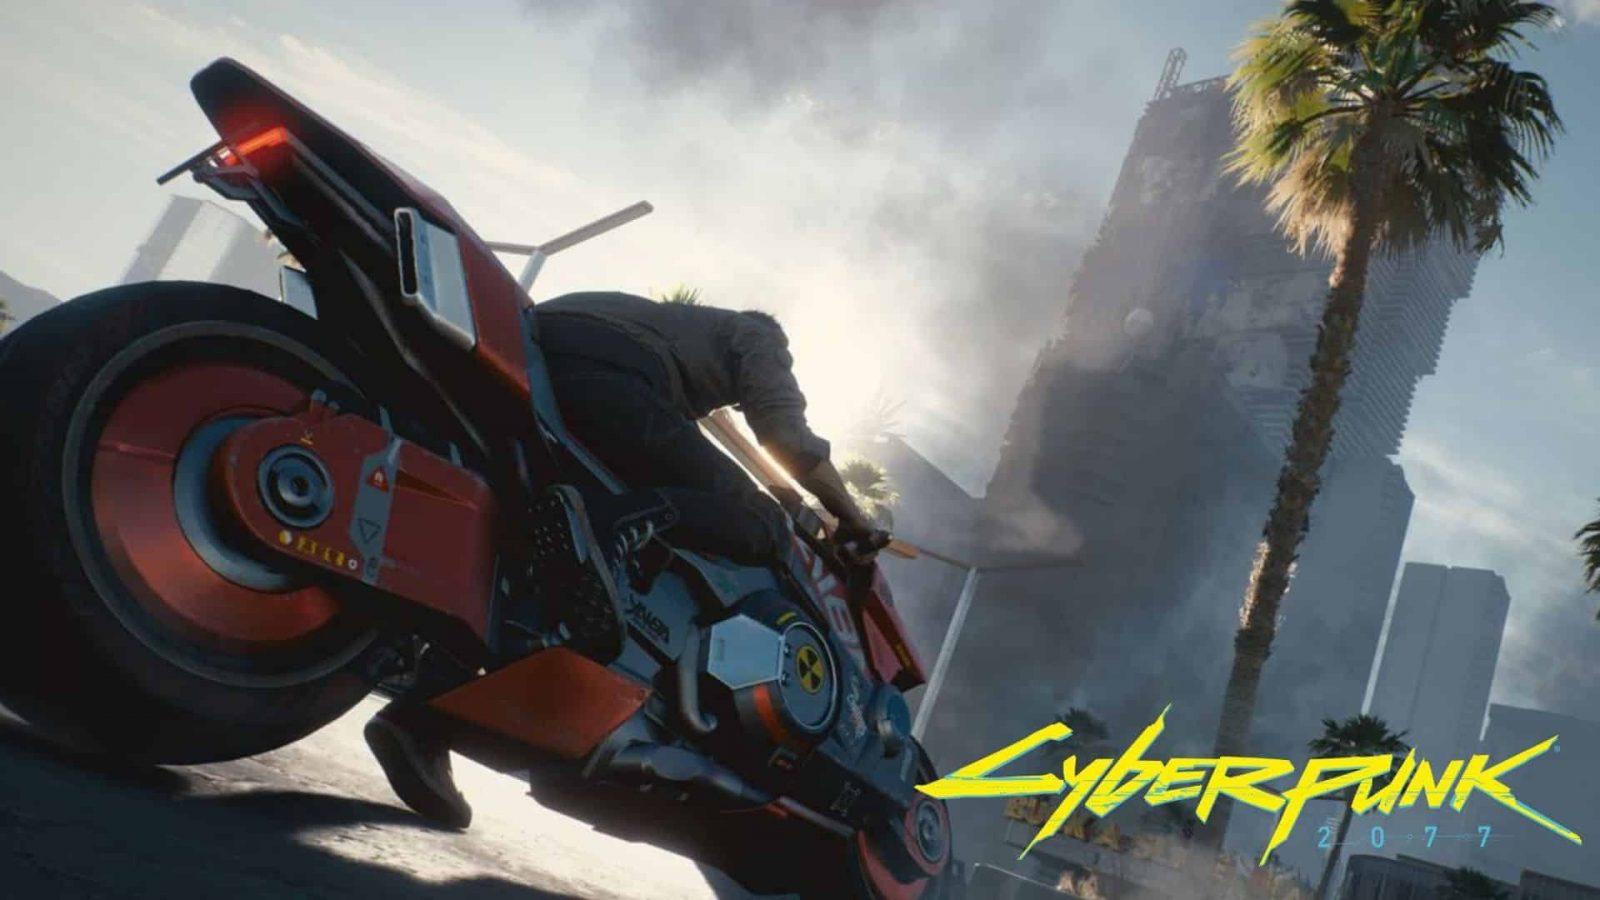 Cyberpunk 2077 next-gen update 1.5: PS5 & Xbox Series X